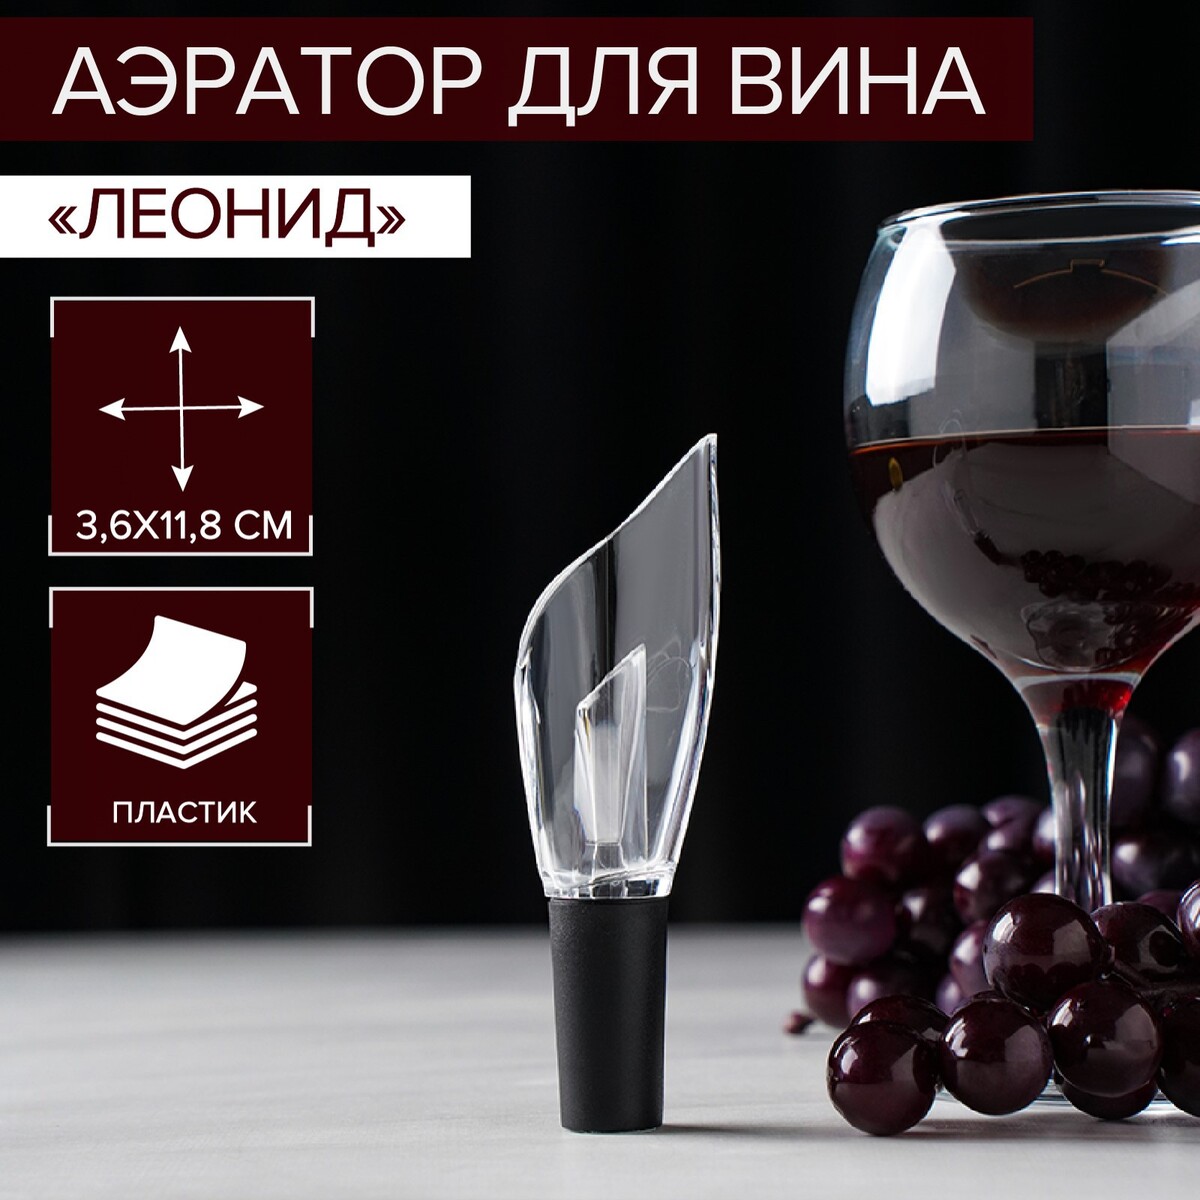 Аэратор для вина air wine, 12 см аэратор для вина crystall wine 9 5 см